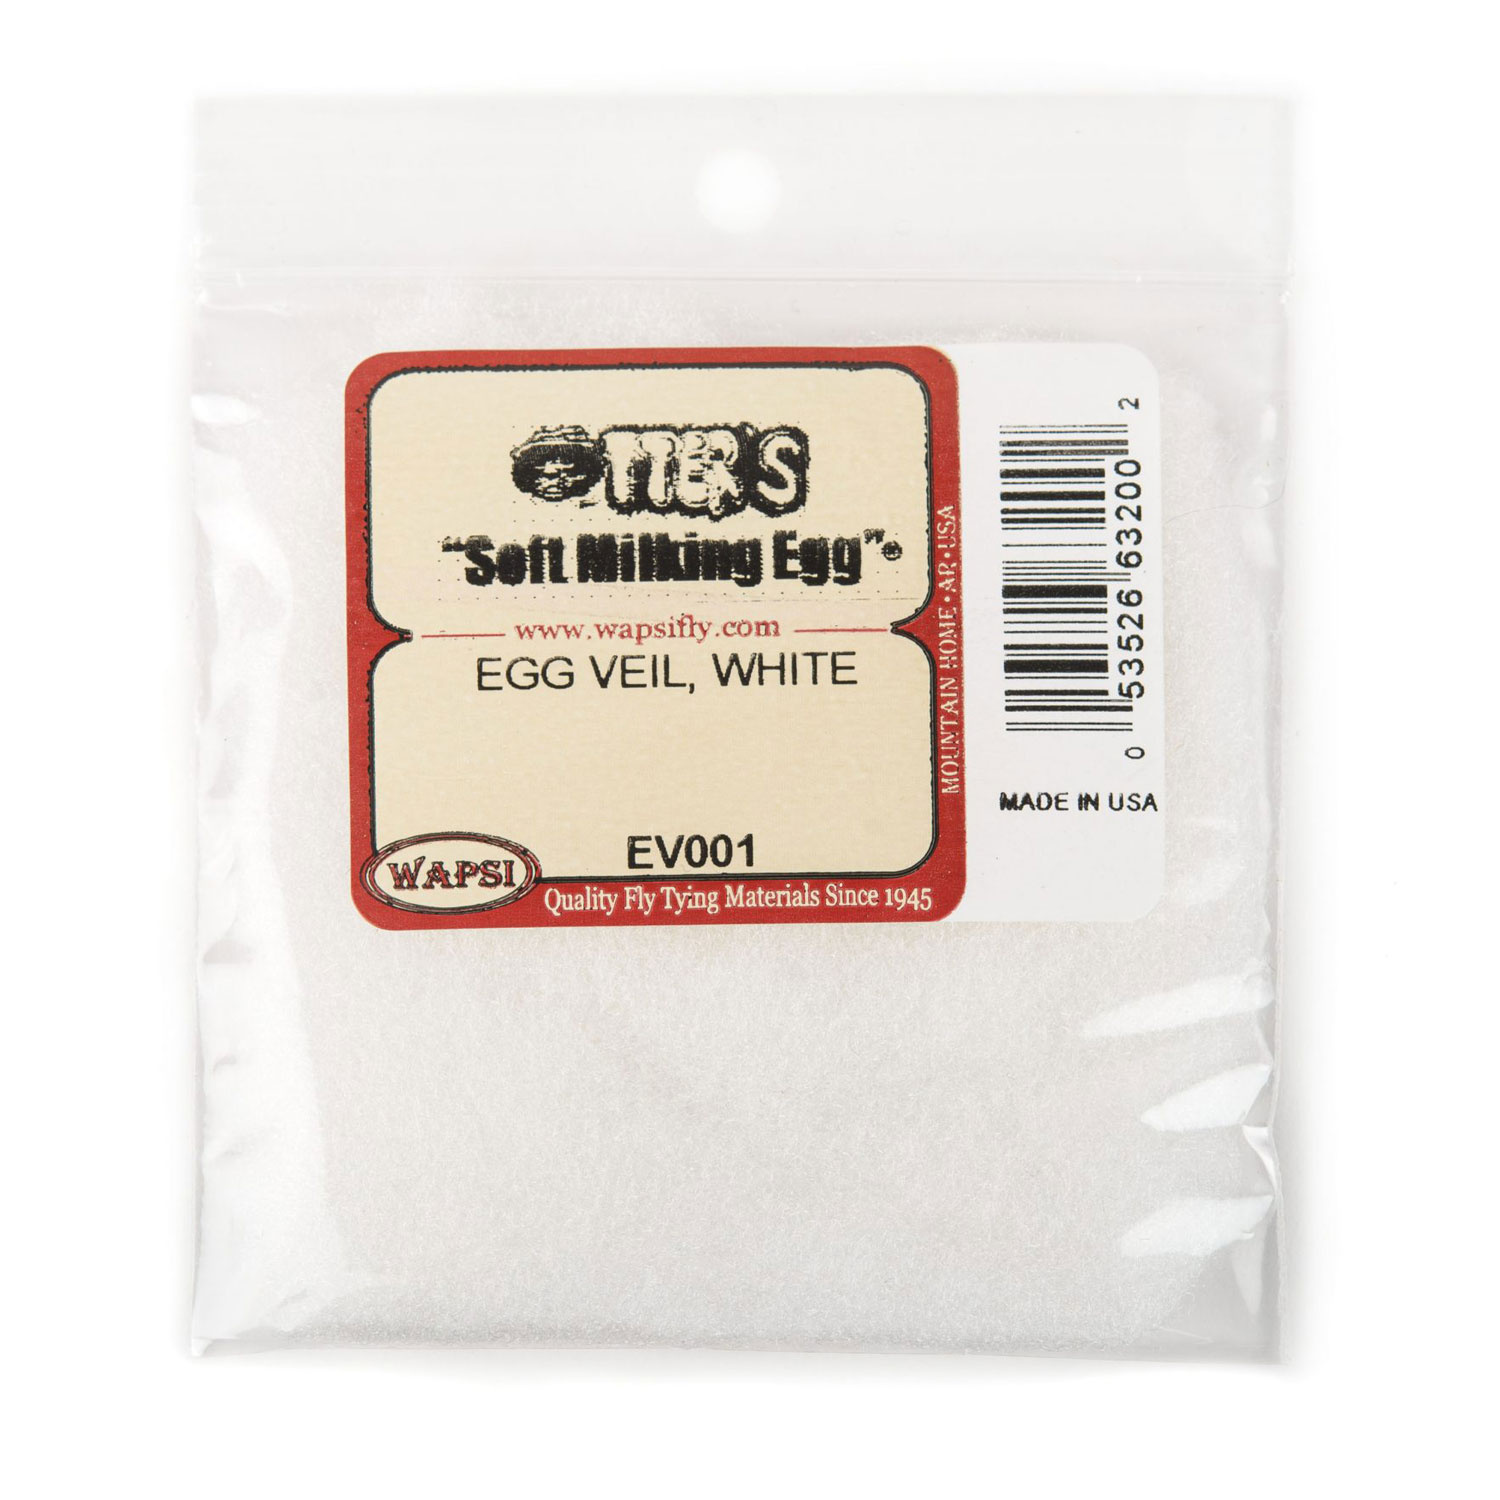 Egg Veil, White